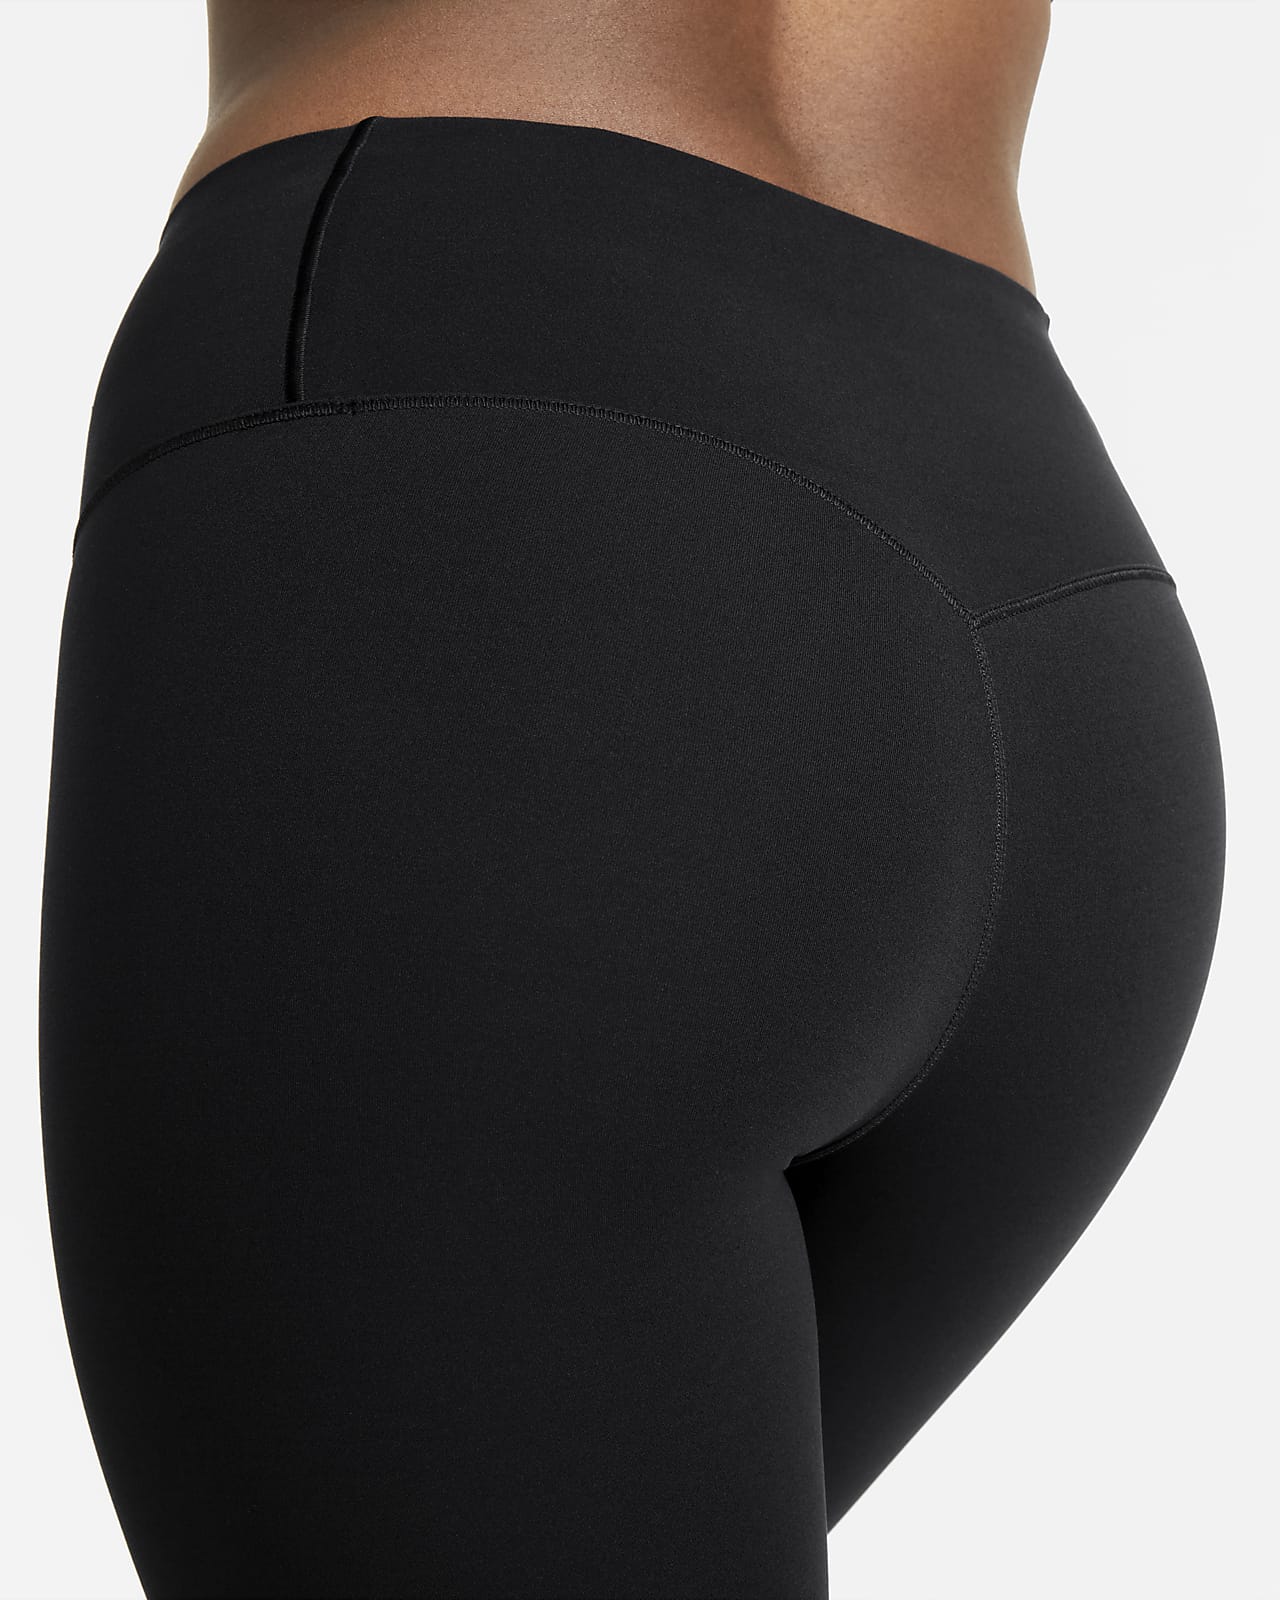 Nike Women's Sportswear SWOOSH Leggings LIMITED - Black DR5617 010 - Size  XS